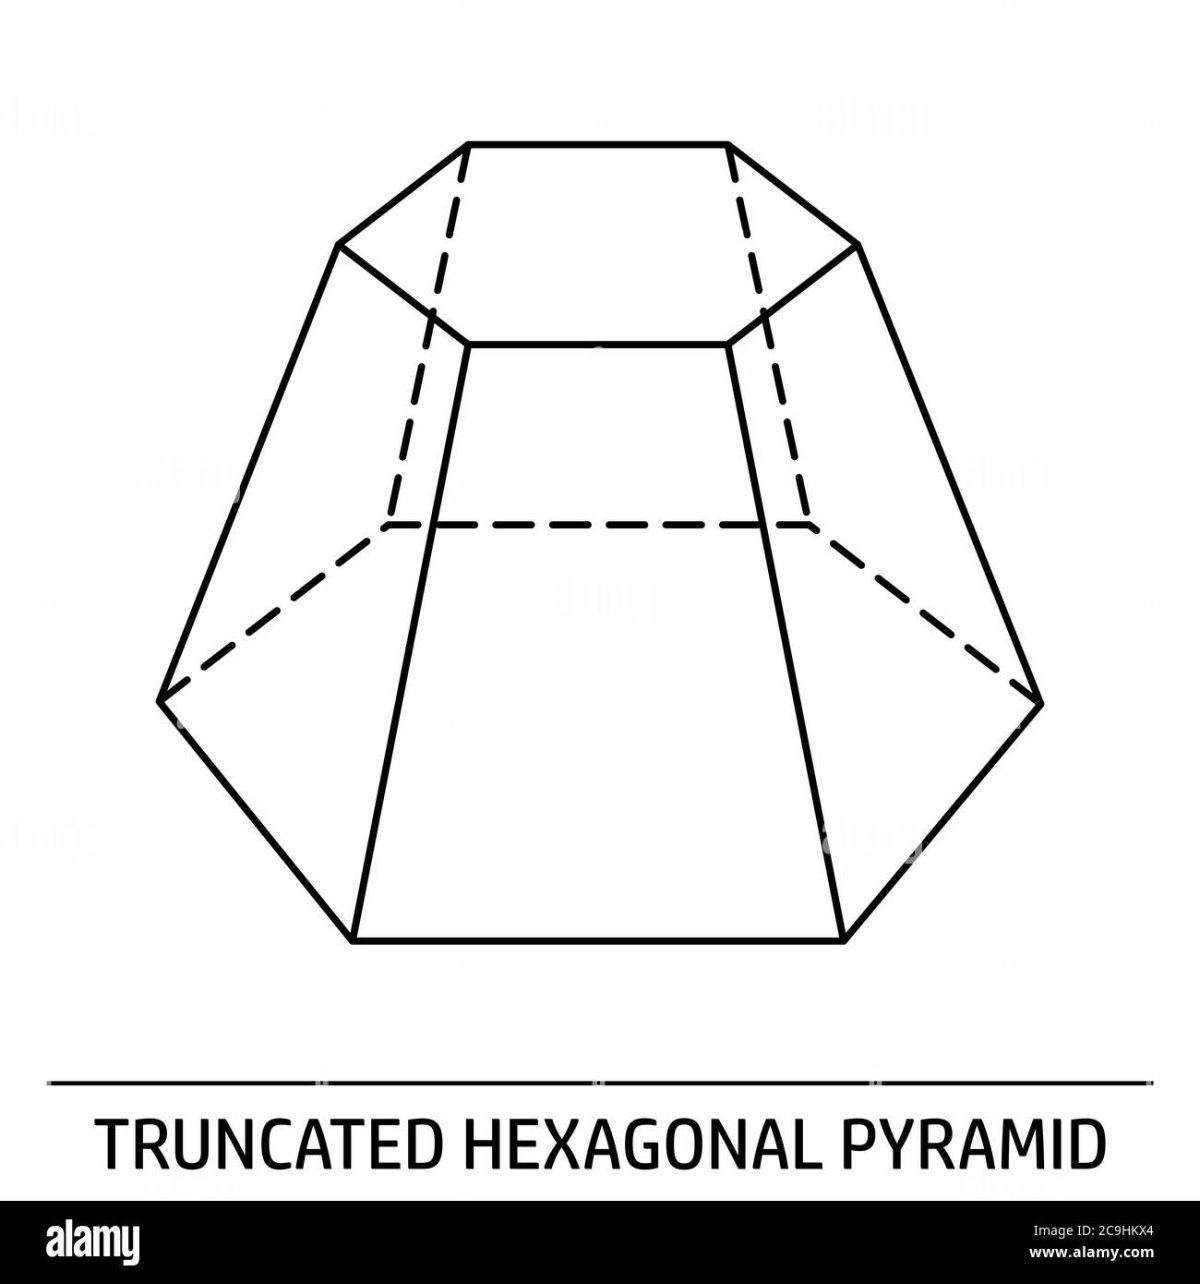 Правильная усеченная пятиугольная пирамида. Усечённая шестиугольная пирамида. Правильная усеченная шестиугольная пирамида. Правильная усеченная десятиугольная пирамида. Усеченная 6 угольная пирамида.